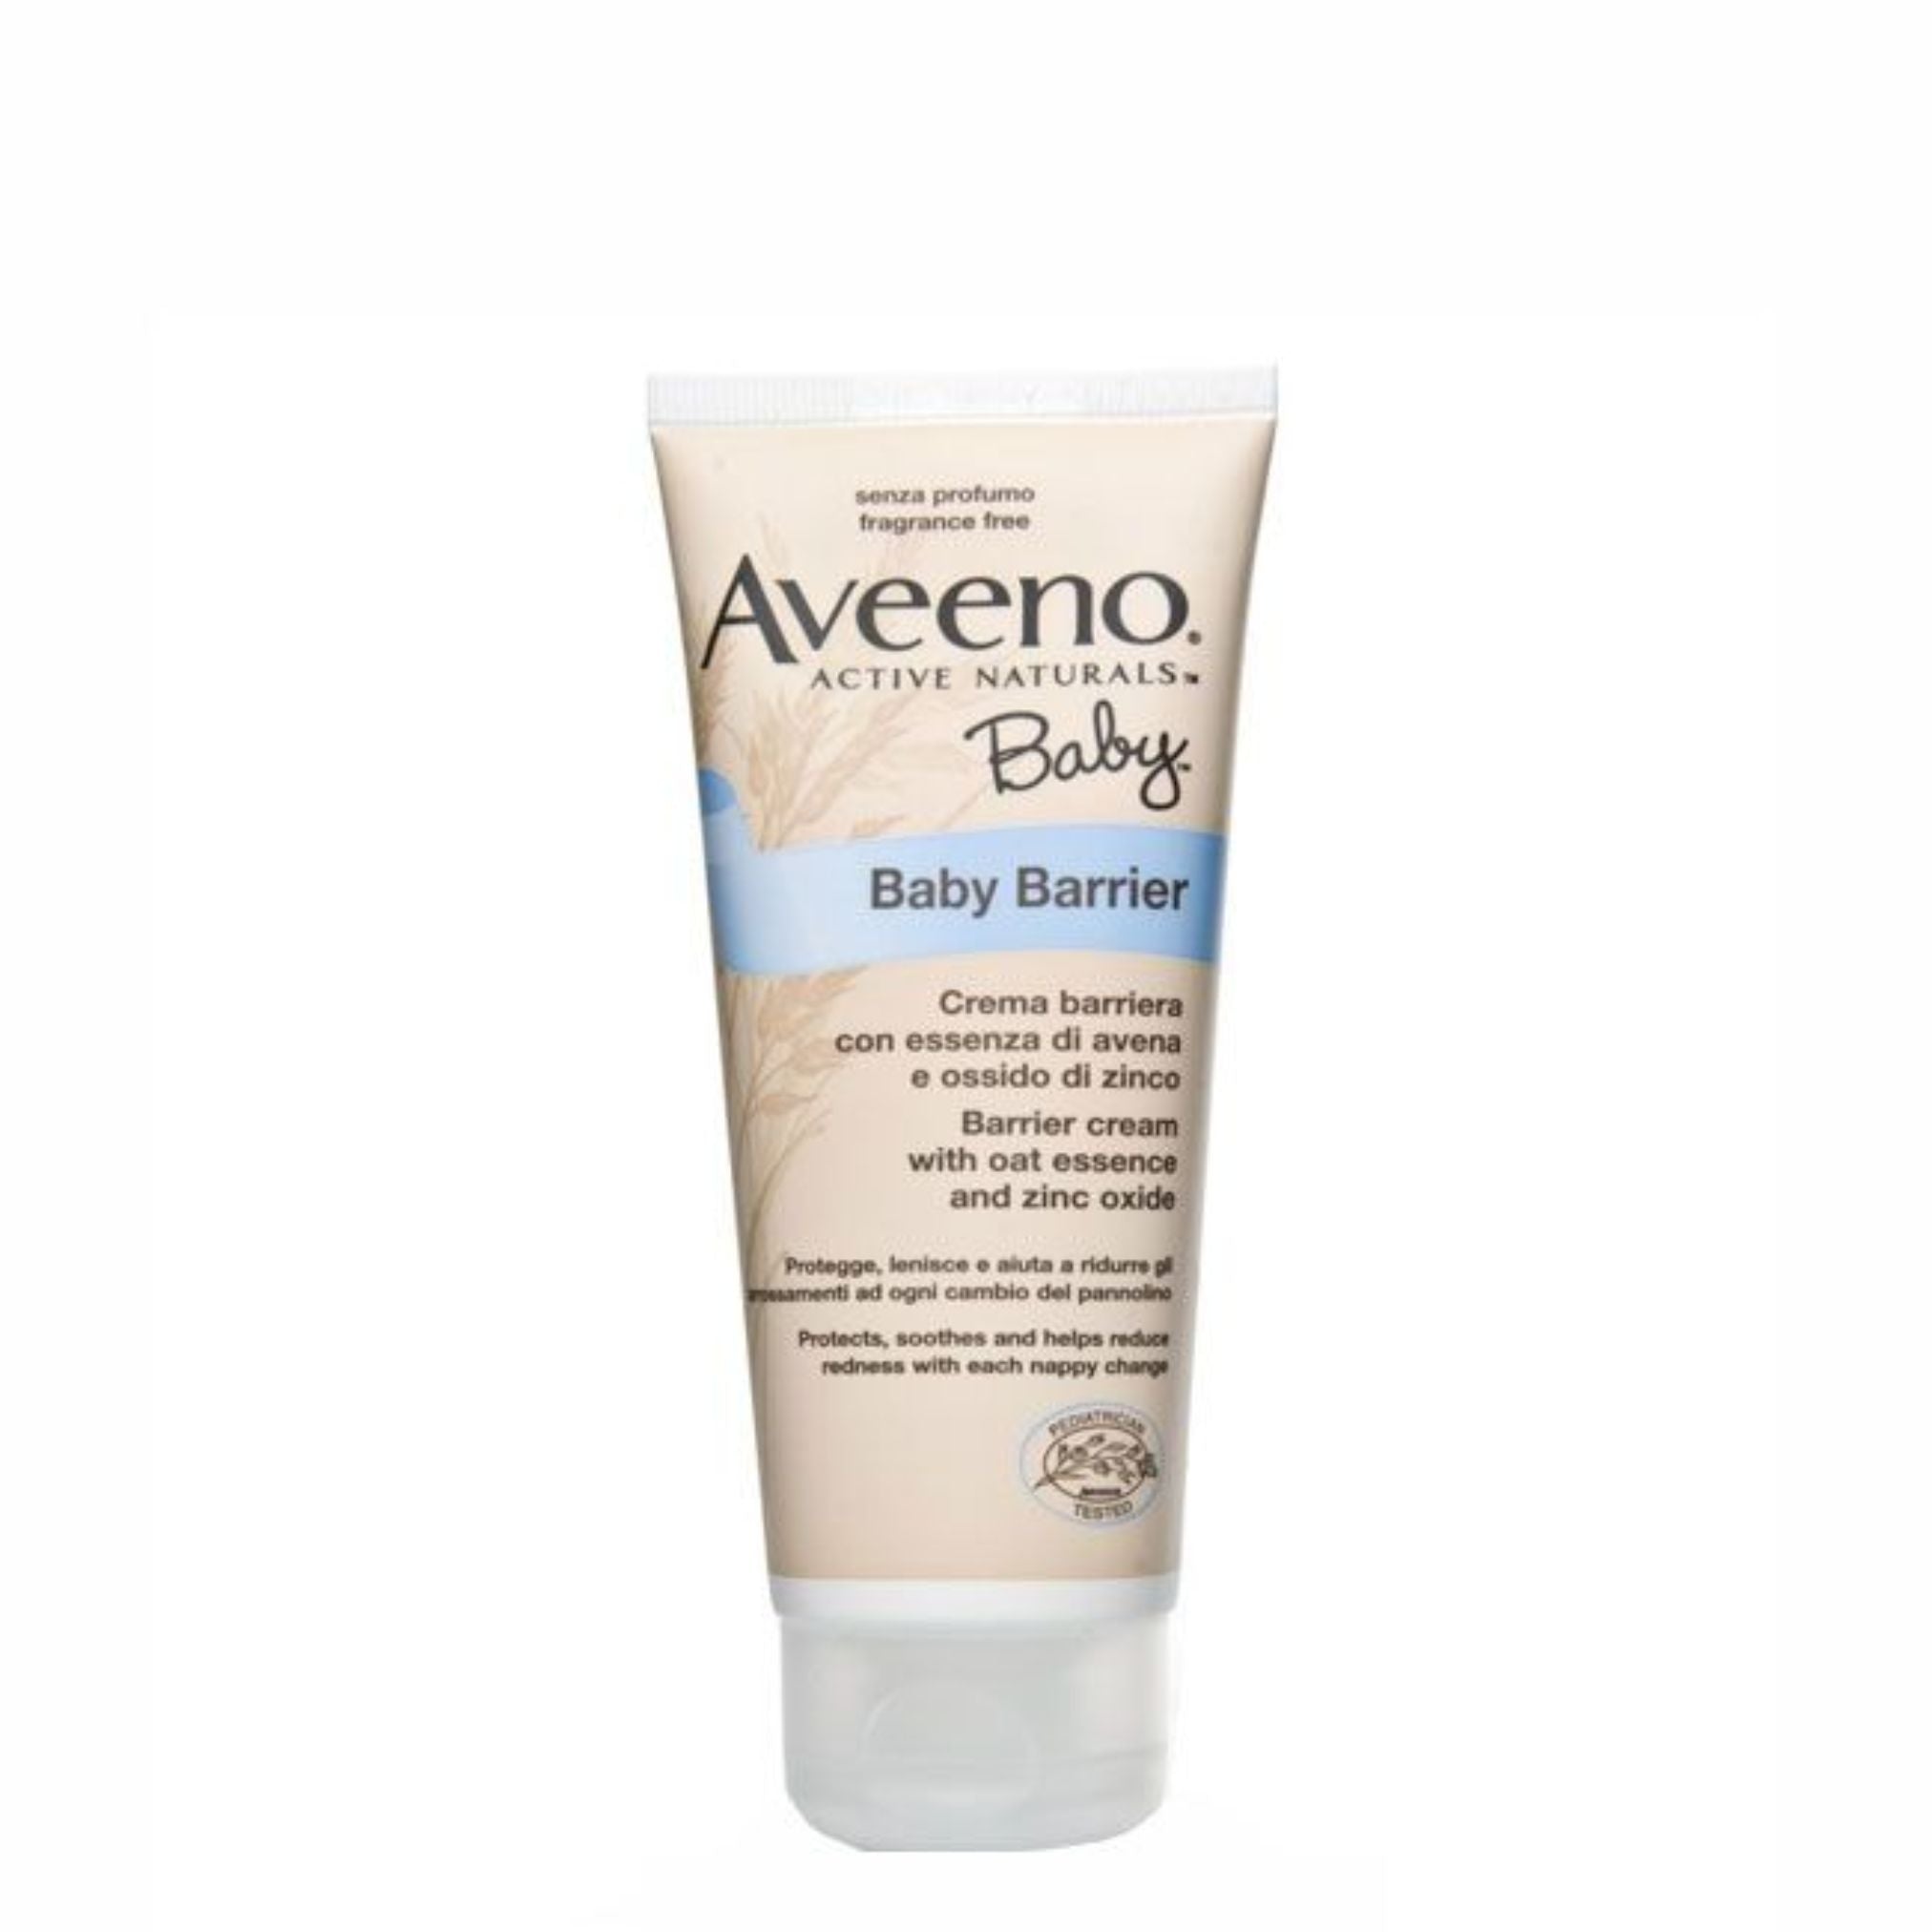 Aveeno Baby Barrier Cream 100ml